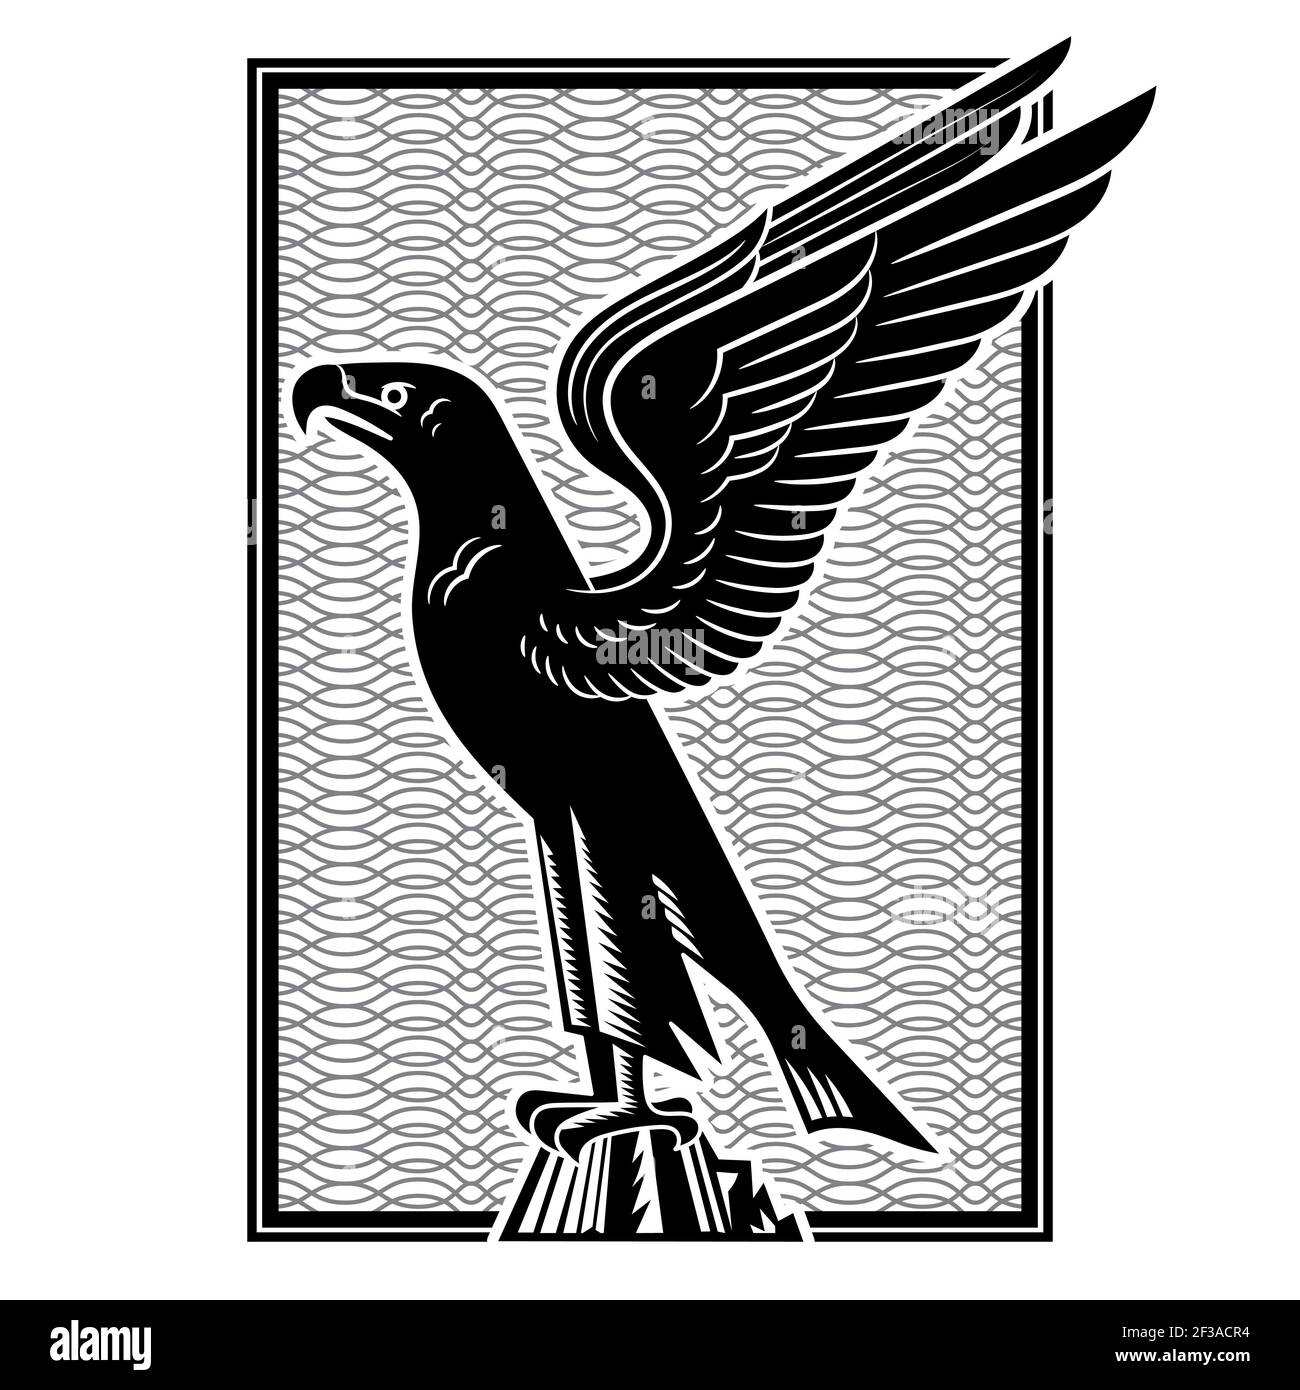 Adler. Stilisiertes Bild eines Adlers mit ausgestreckten Flügeln Stock Vektor